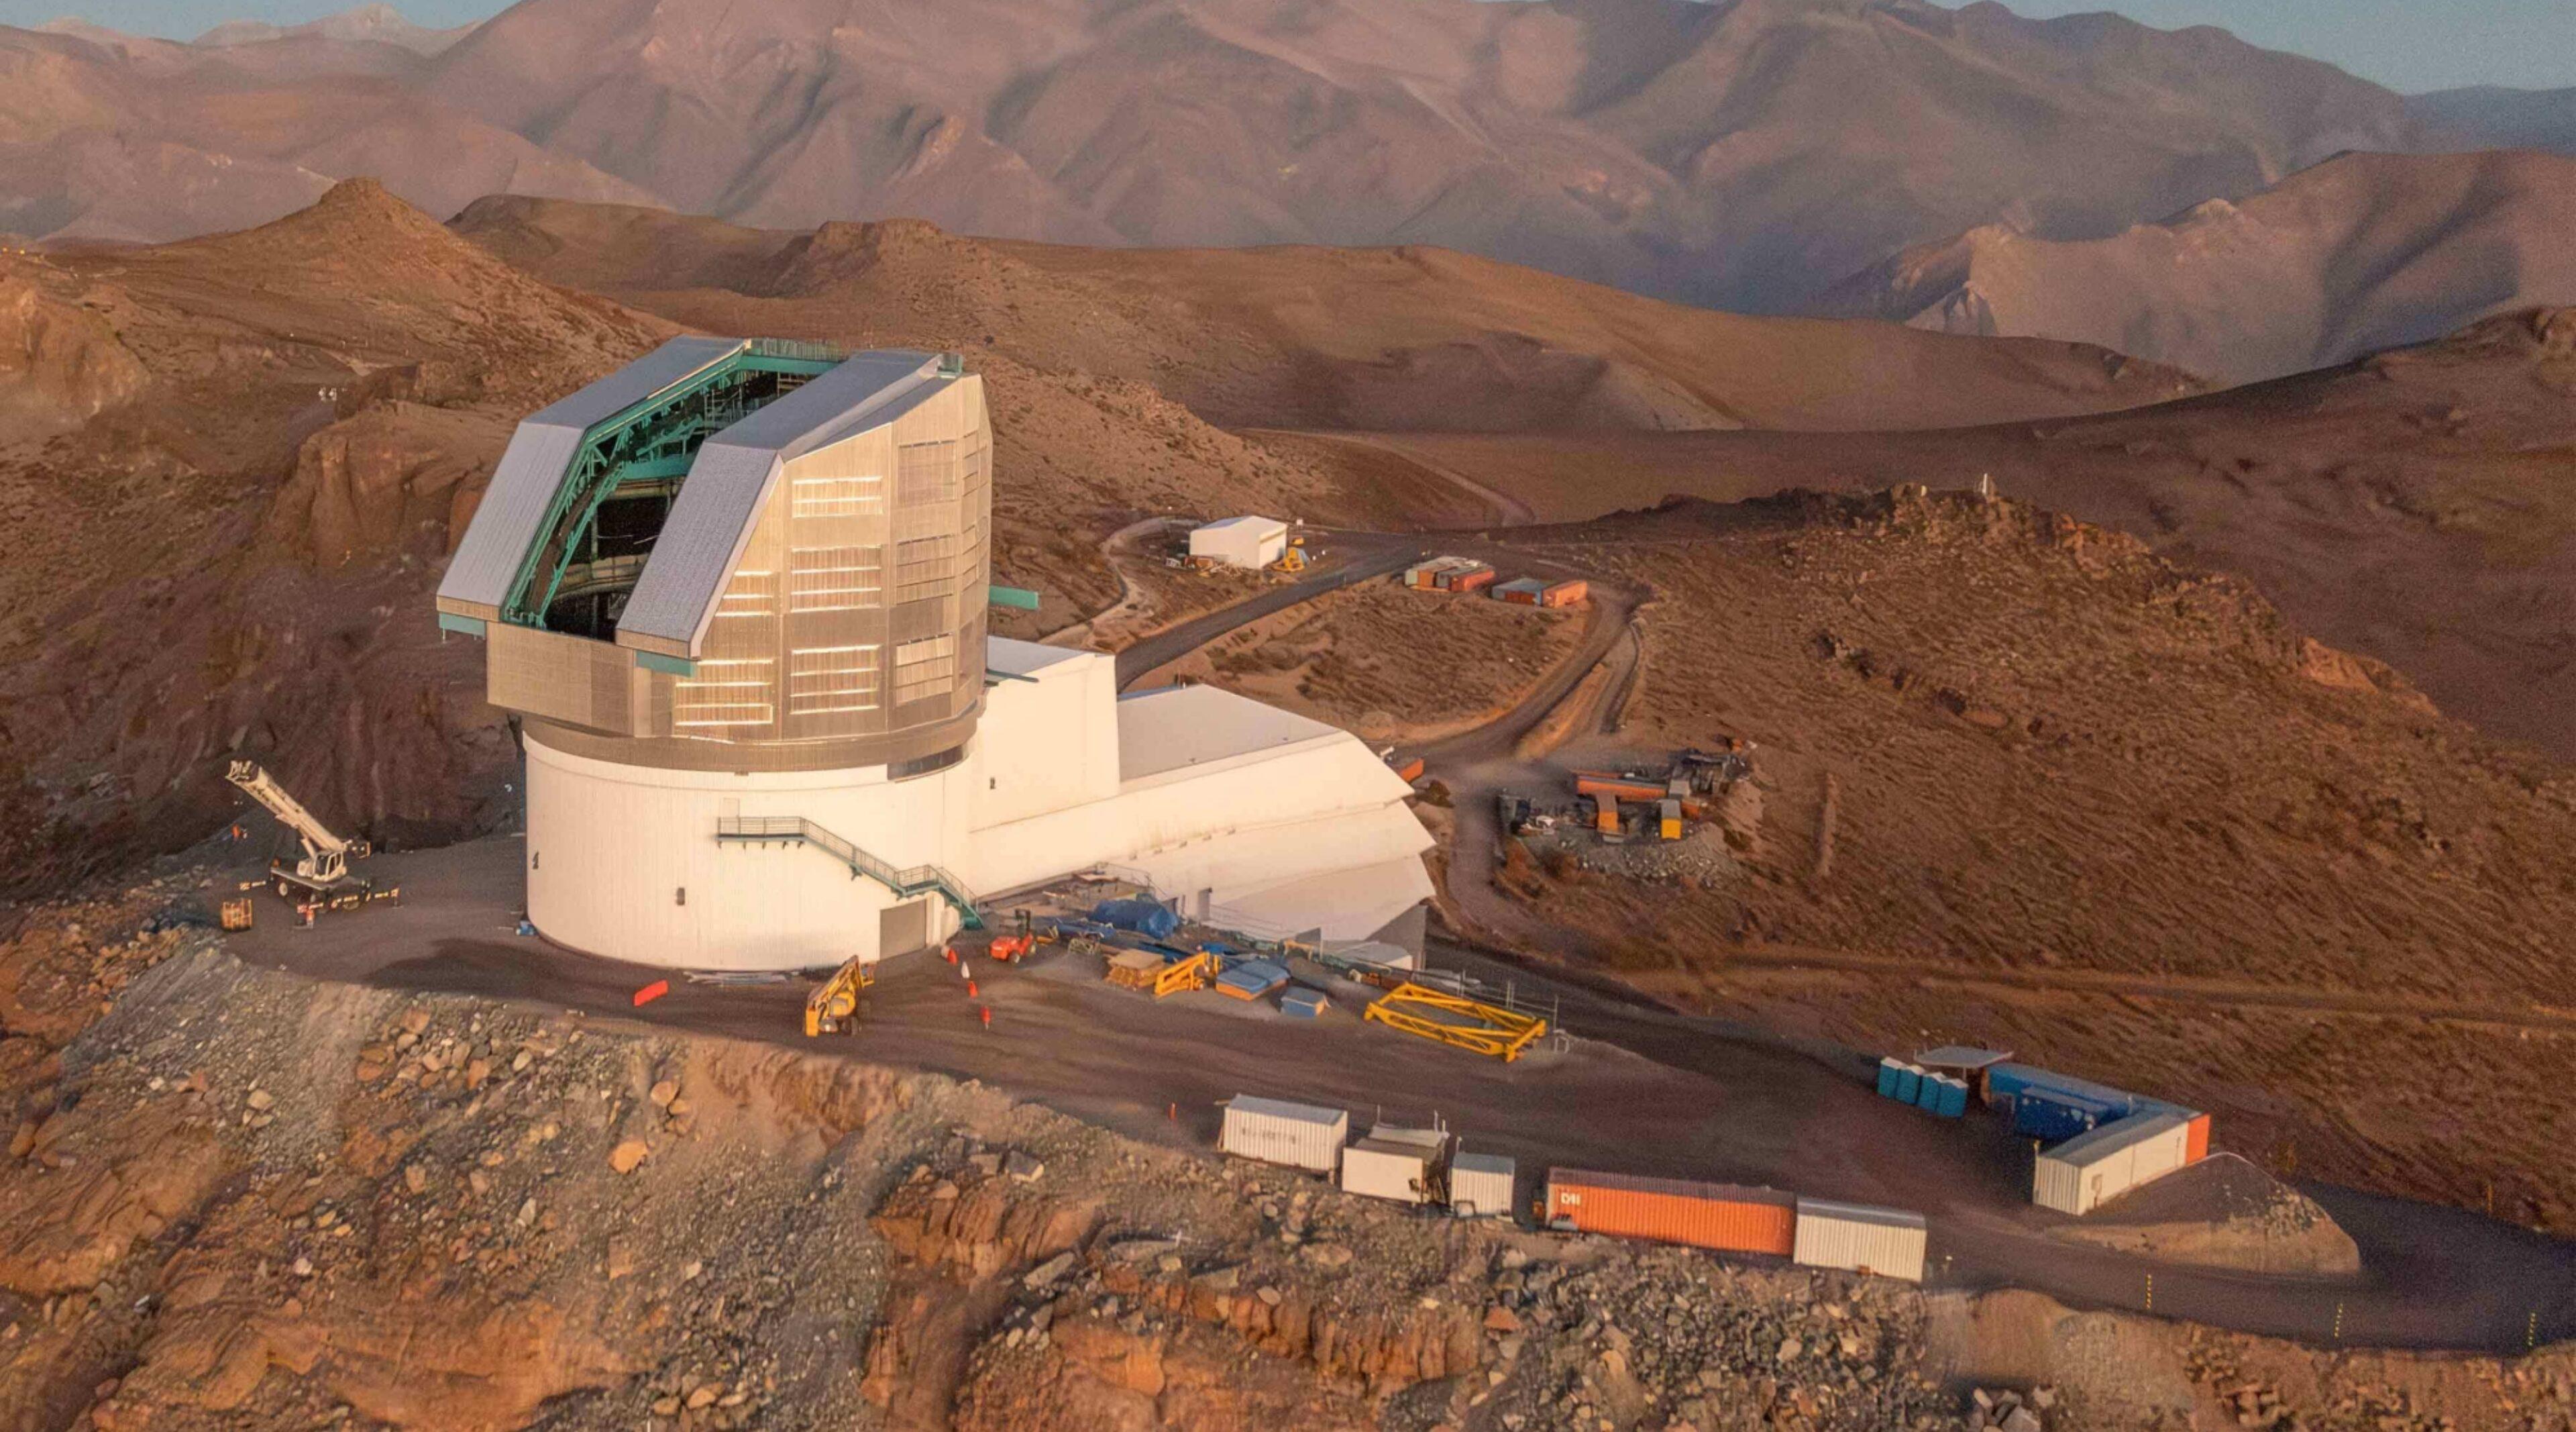 O observatório astronômico com um telescópio refletor de 8,4 metros será inaugurado no Chile. (Fonte: Observatório Vera Rubín/Divulgação).